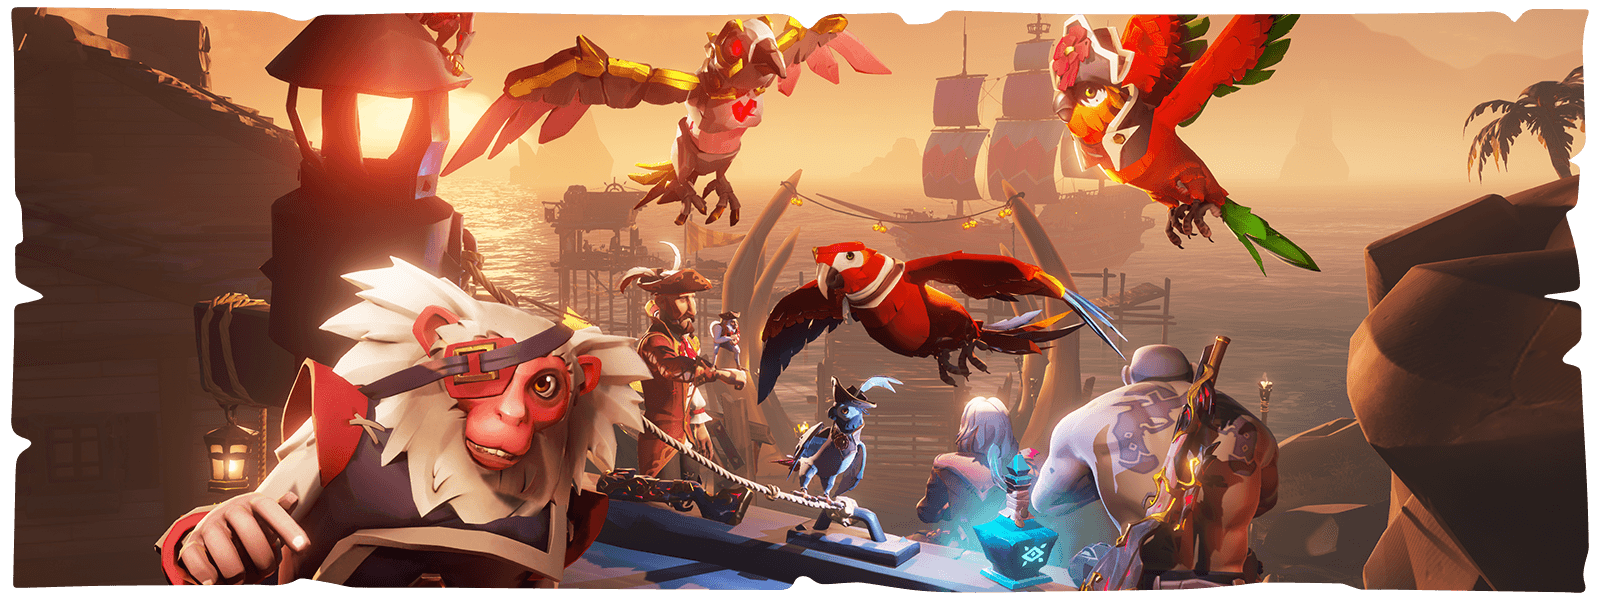 Персонажи, попугаи и обезьяна на фоне порта из игры Sea of Thieves